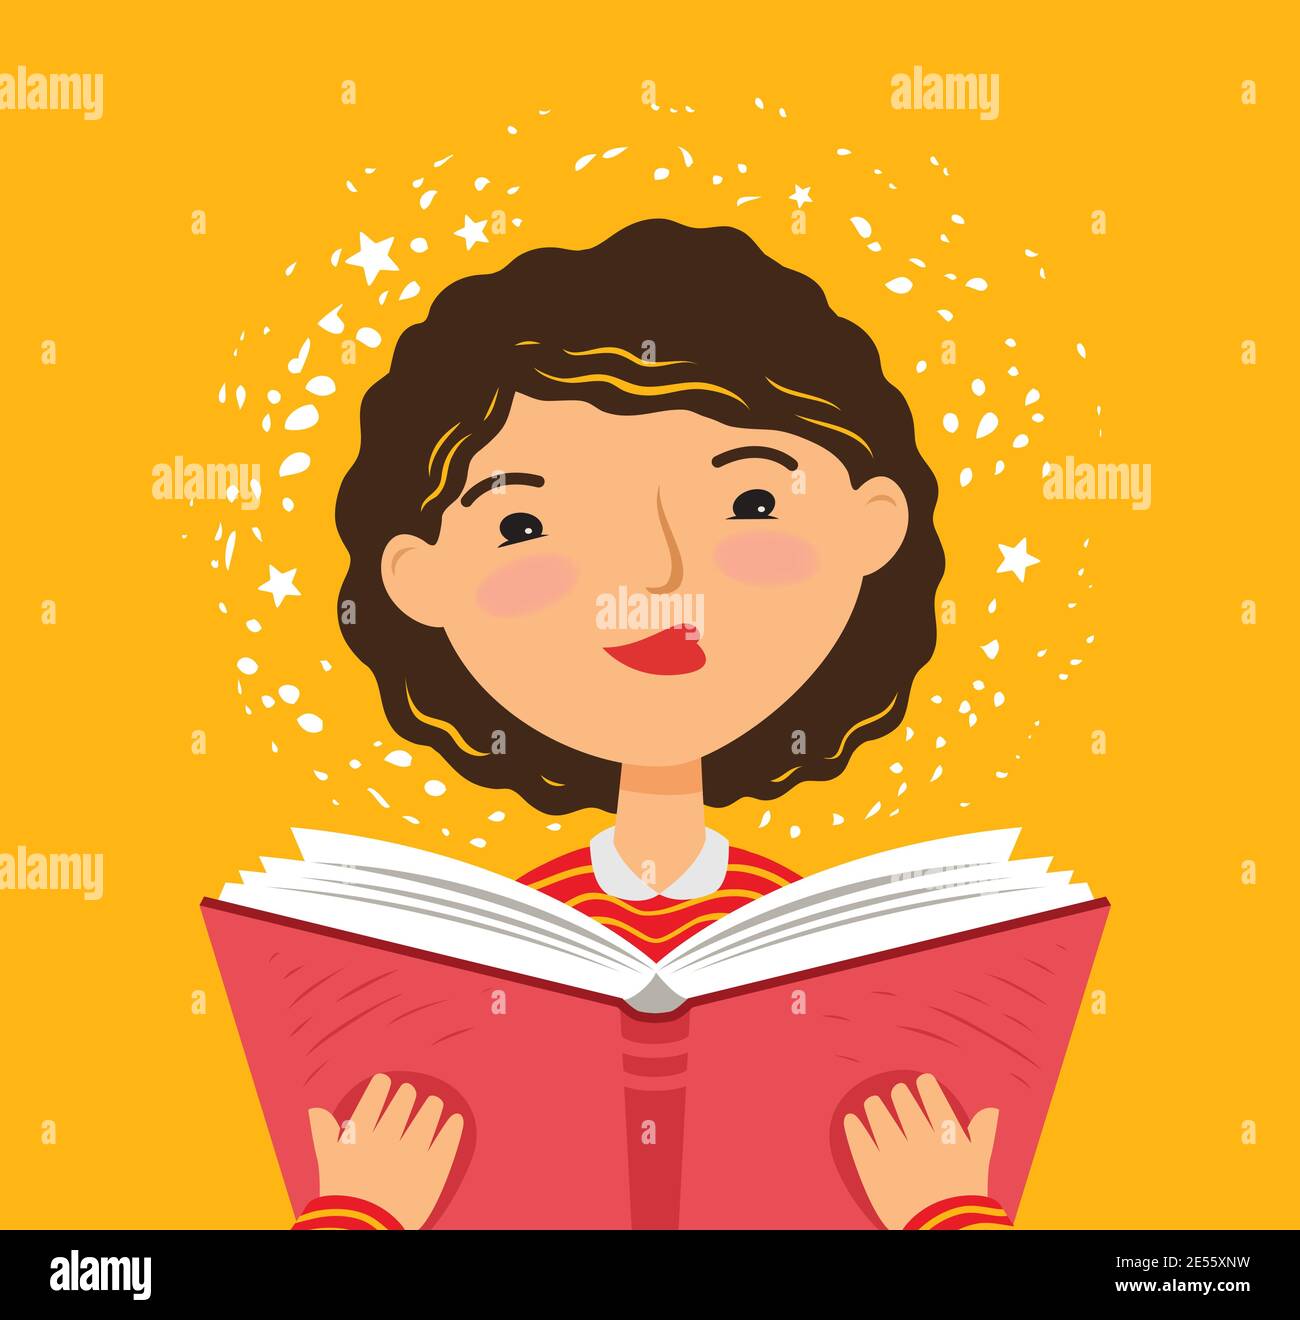 Girl reading a book. Cartoon vector illustration Stock Vector